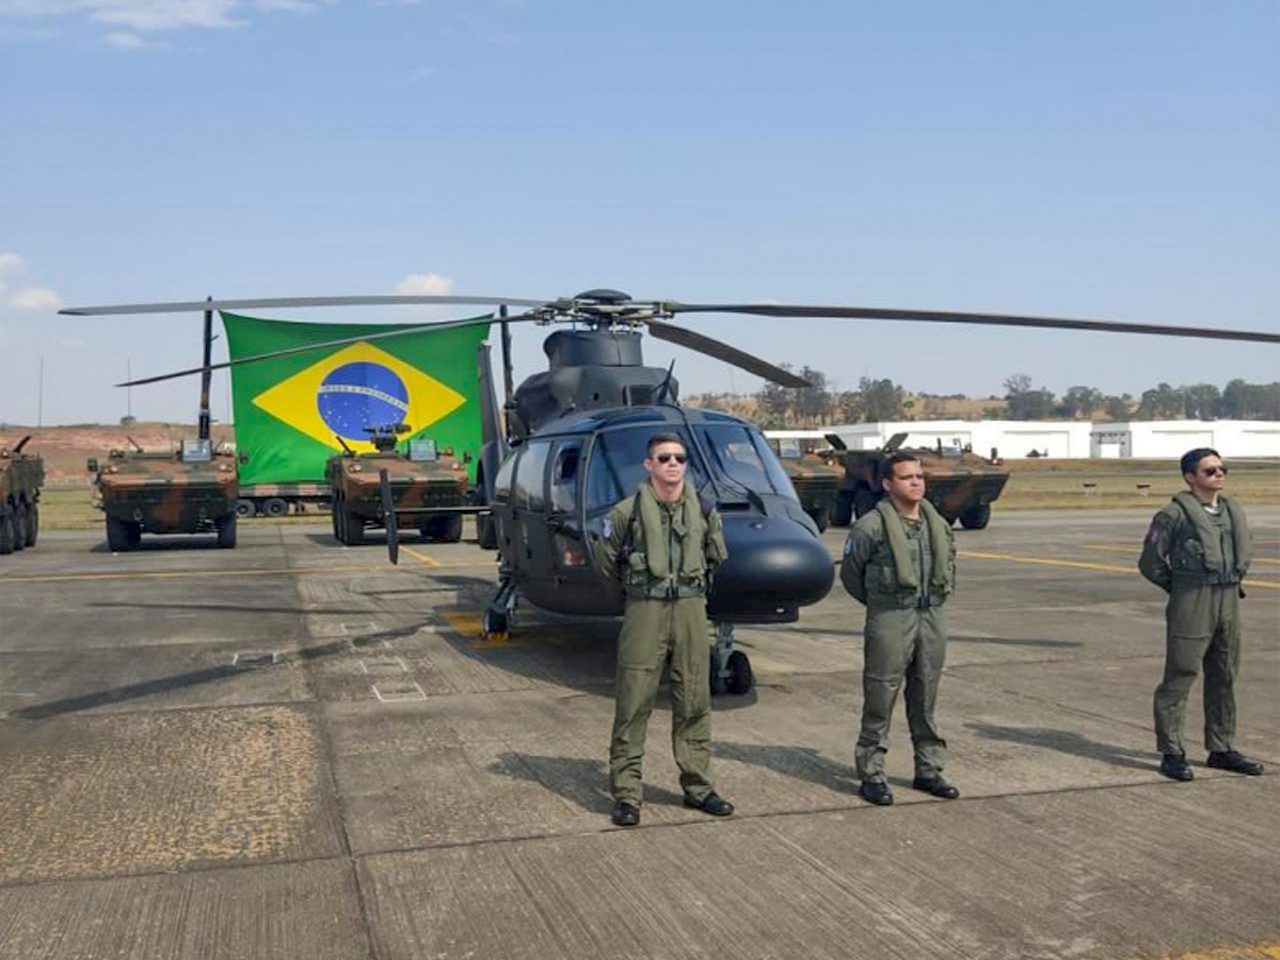 Brazilian Army Aviation Day - March 23